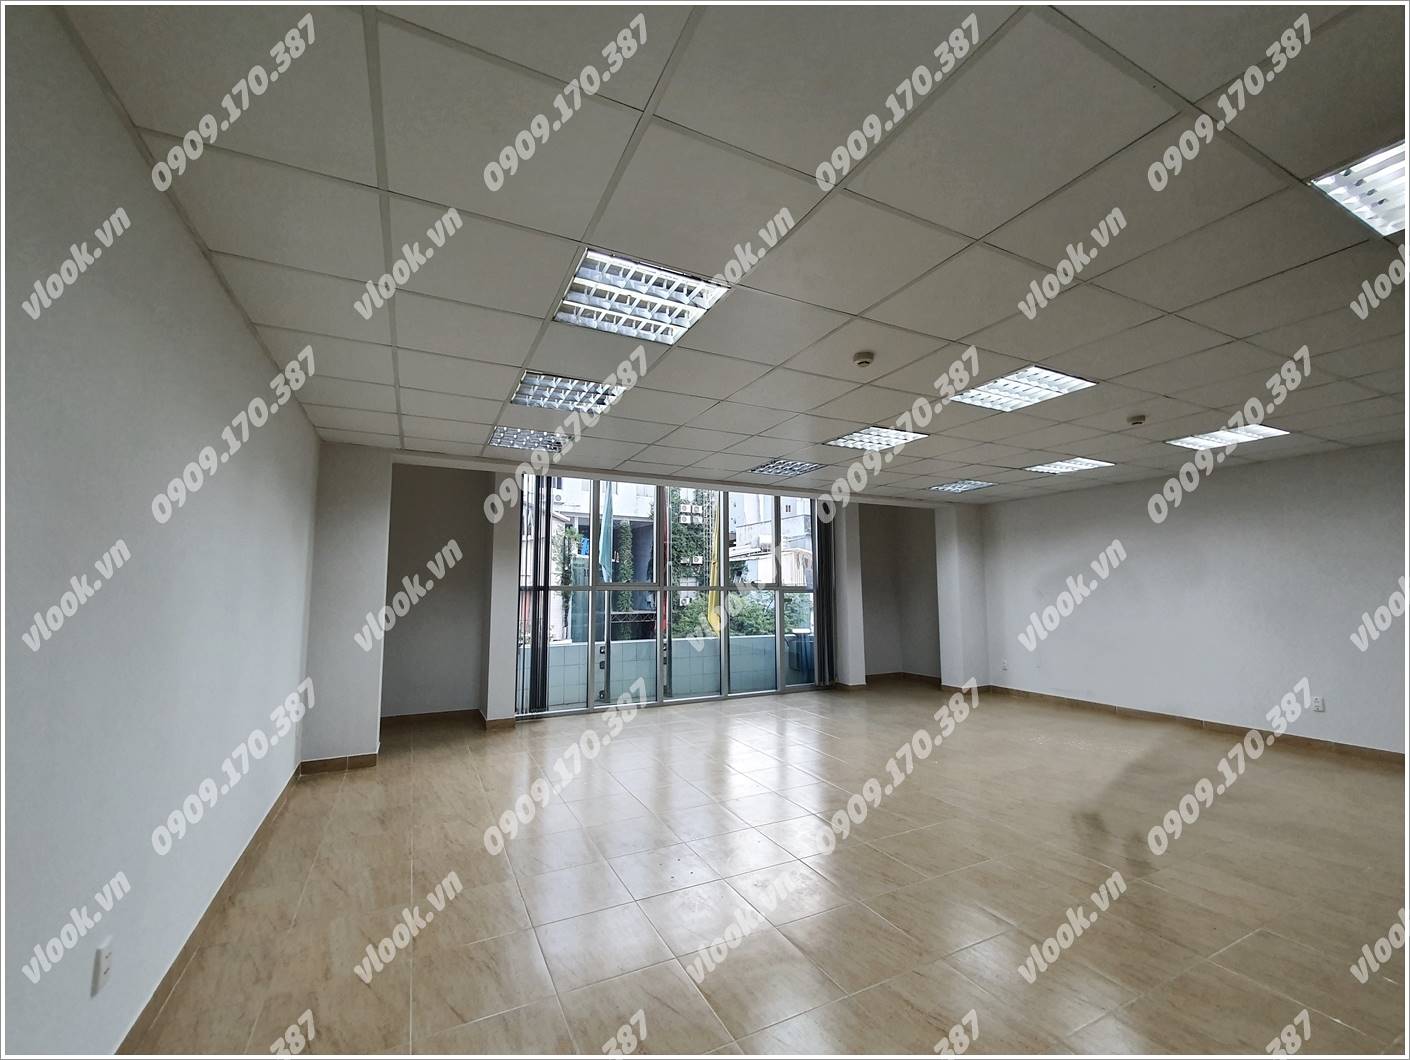 Cao ốc cho thuê văn phòng AD Building, Nam Quốc Cang, Quận 1, TPHCM - vlook.vn